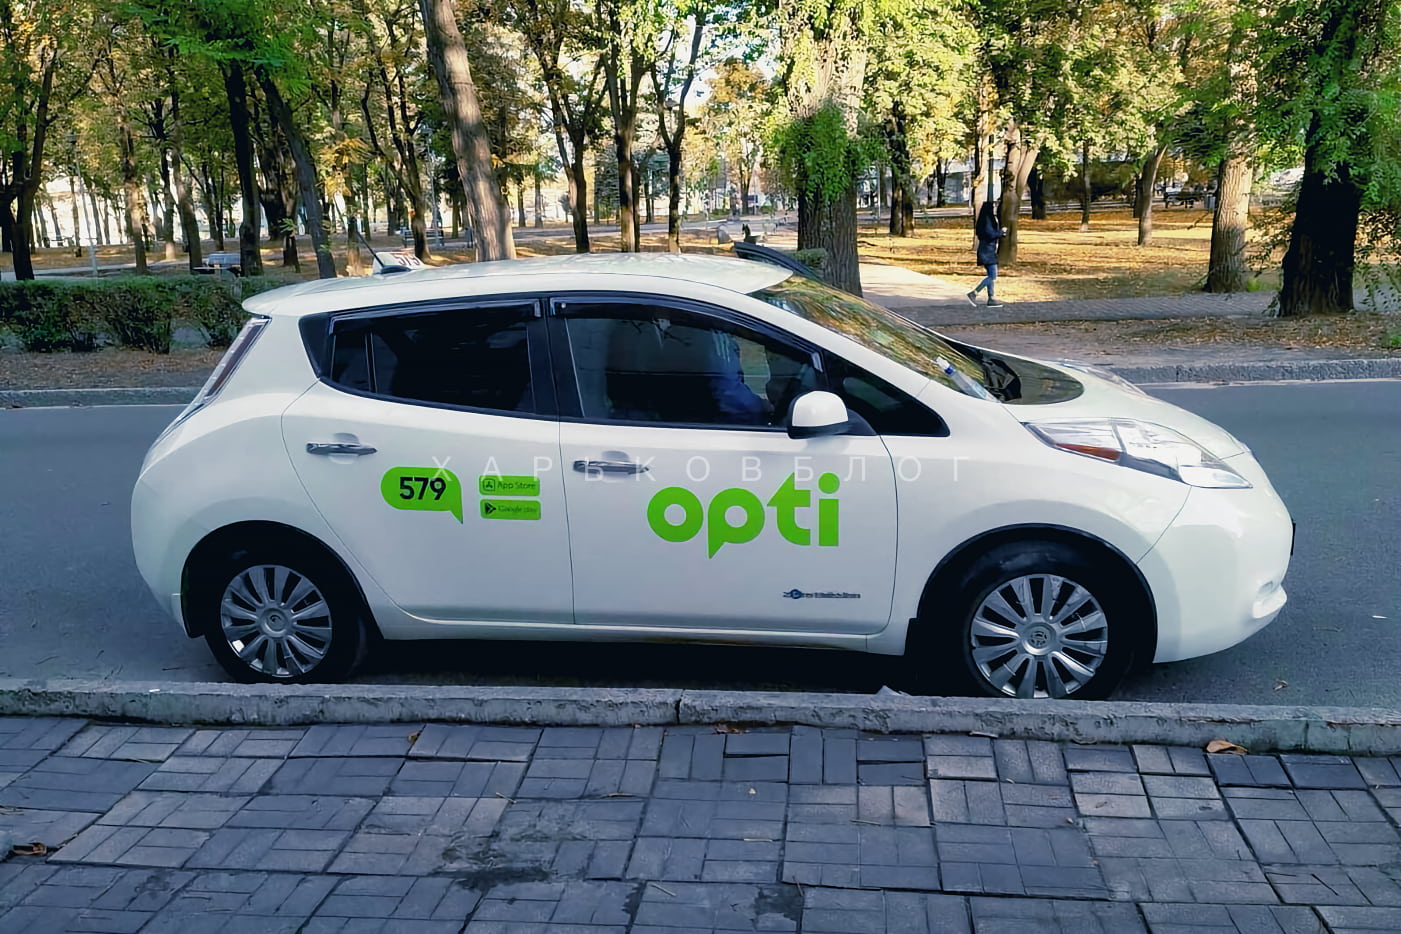 Служба такси OPTI в Харькове - как работает сейчас